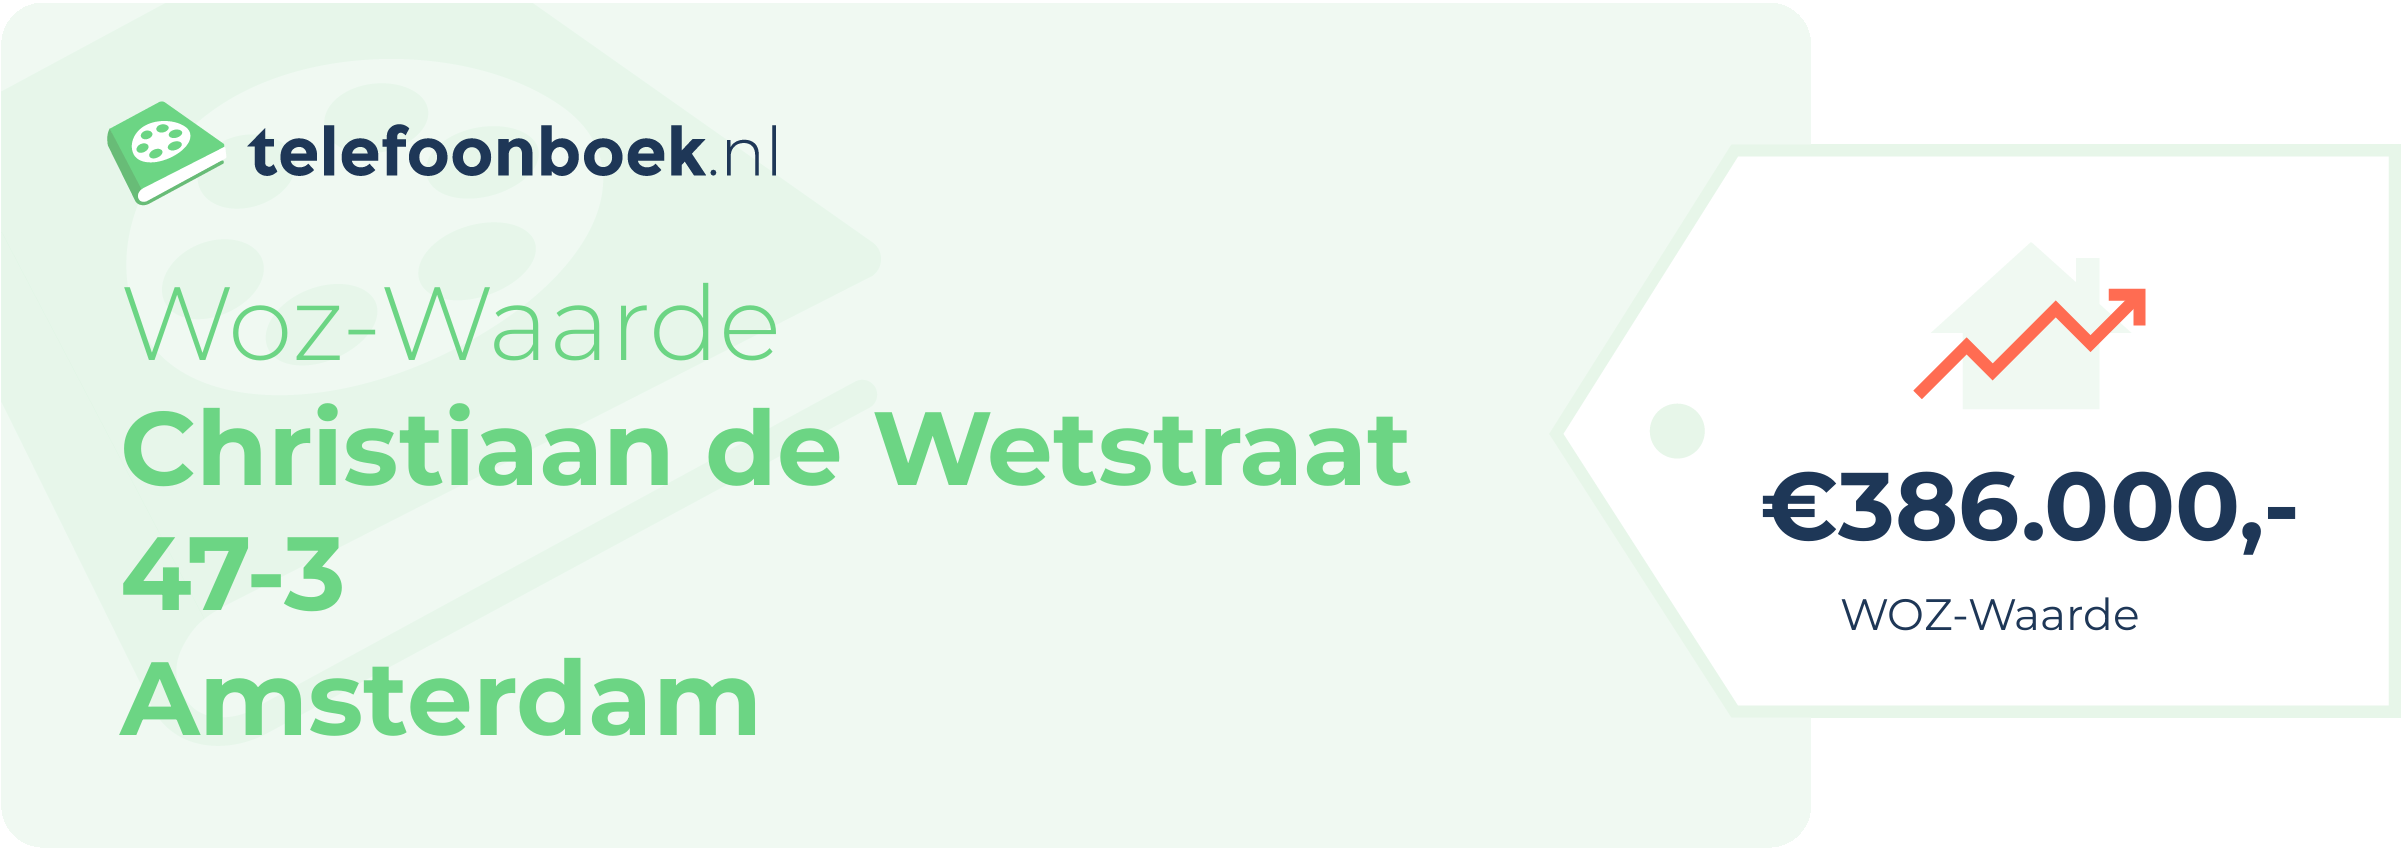 WOZ-waarde Christiaan De Wetstraat 47-3 Amsterdam